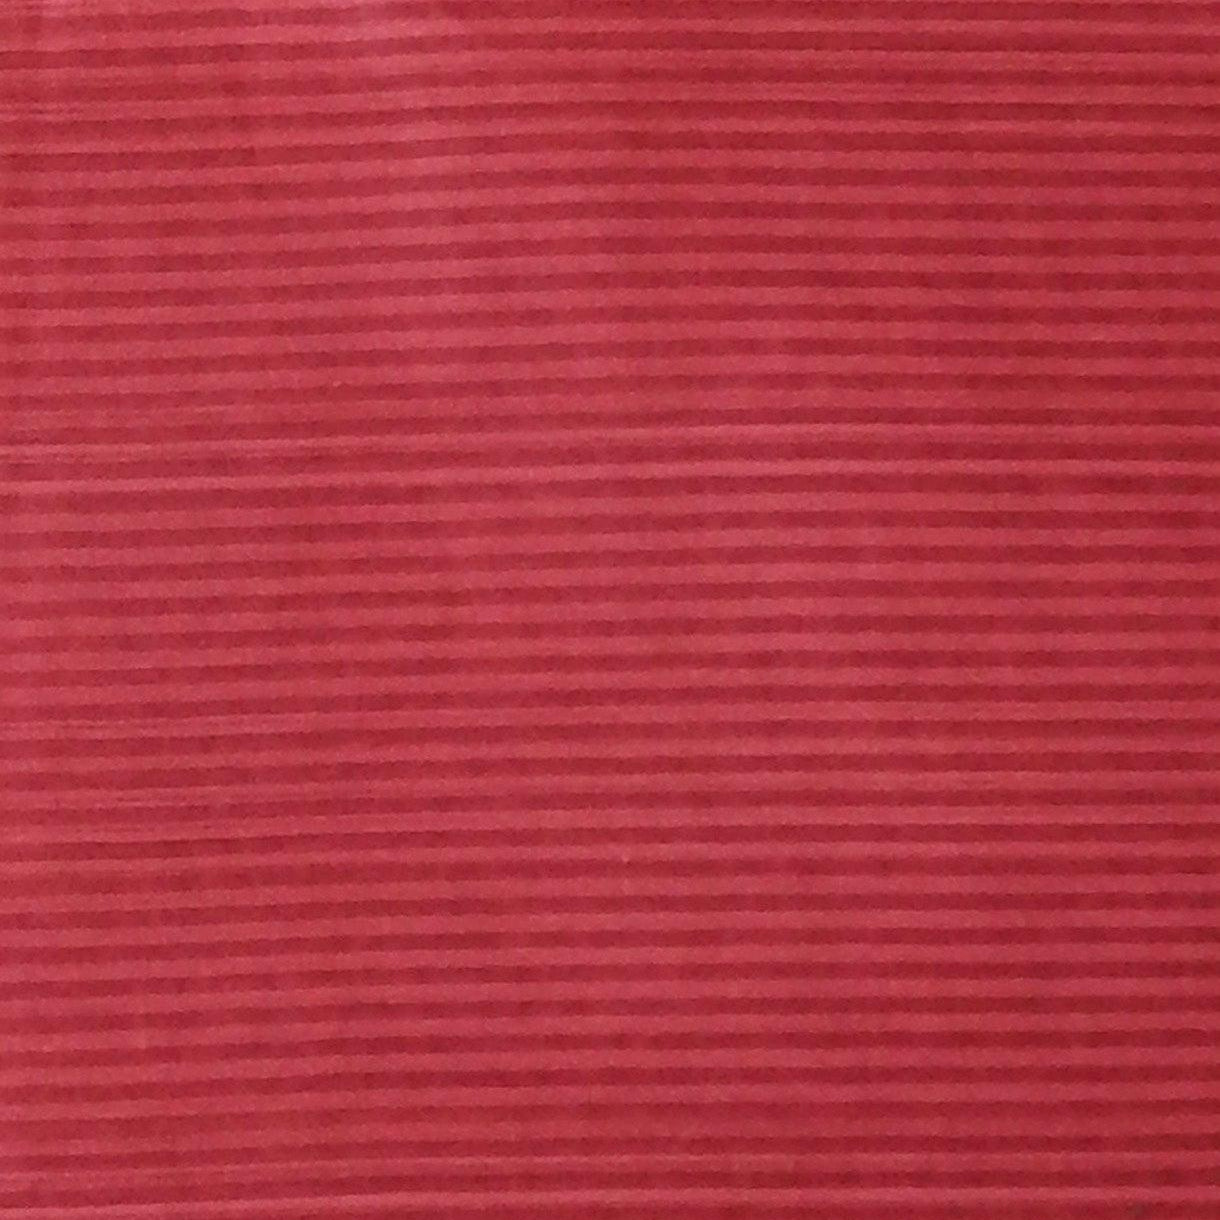 Red Traditional Ethnic Designs Printed Pure Mulmul Cotton Zari Border Saree - Shop Karishma